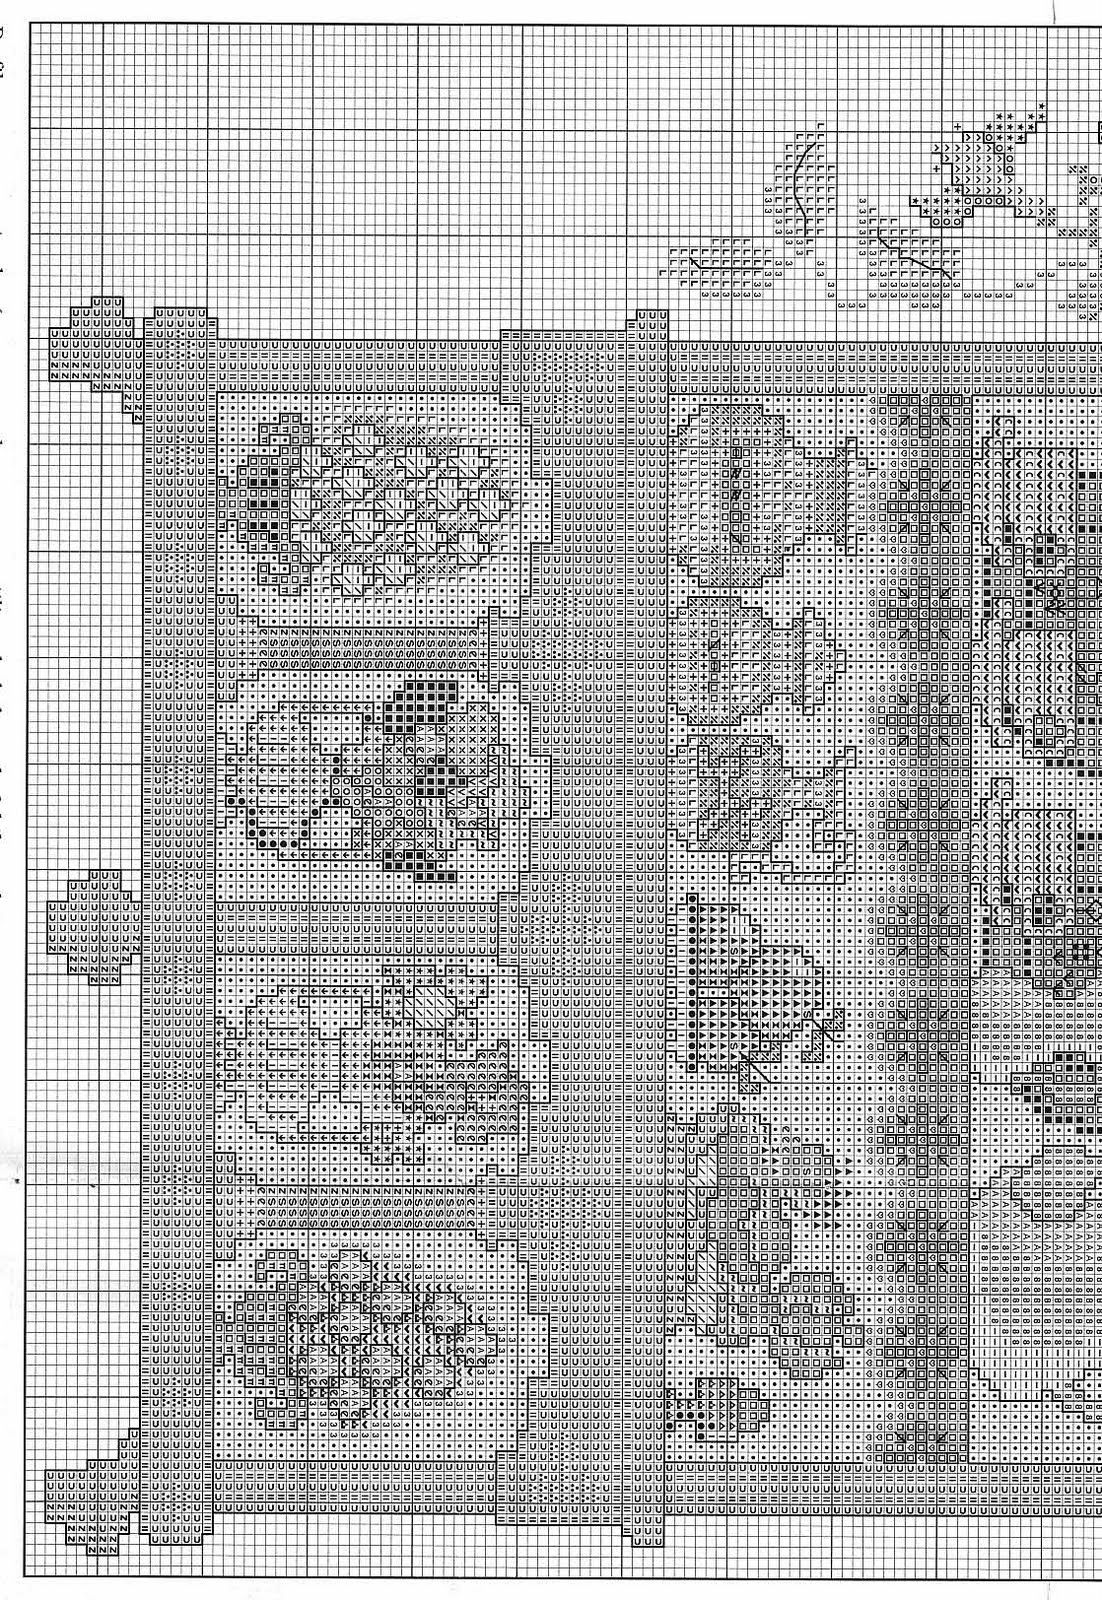 Plate rack beautiful cross stitch pattern (2)